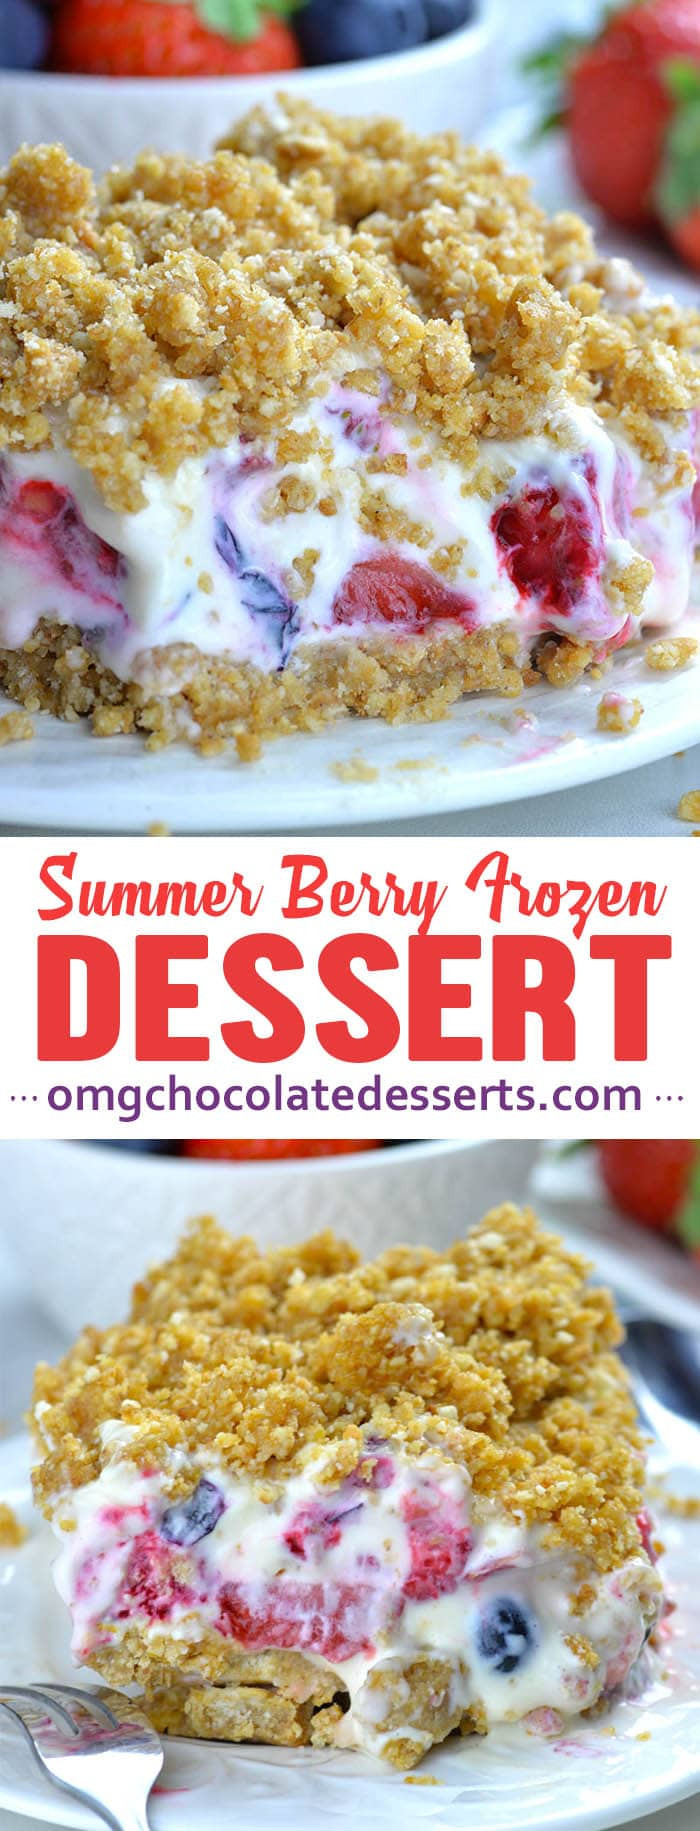 Easy Summer Dessert Recipes
 Summer Berry Frozen Dessert